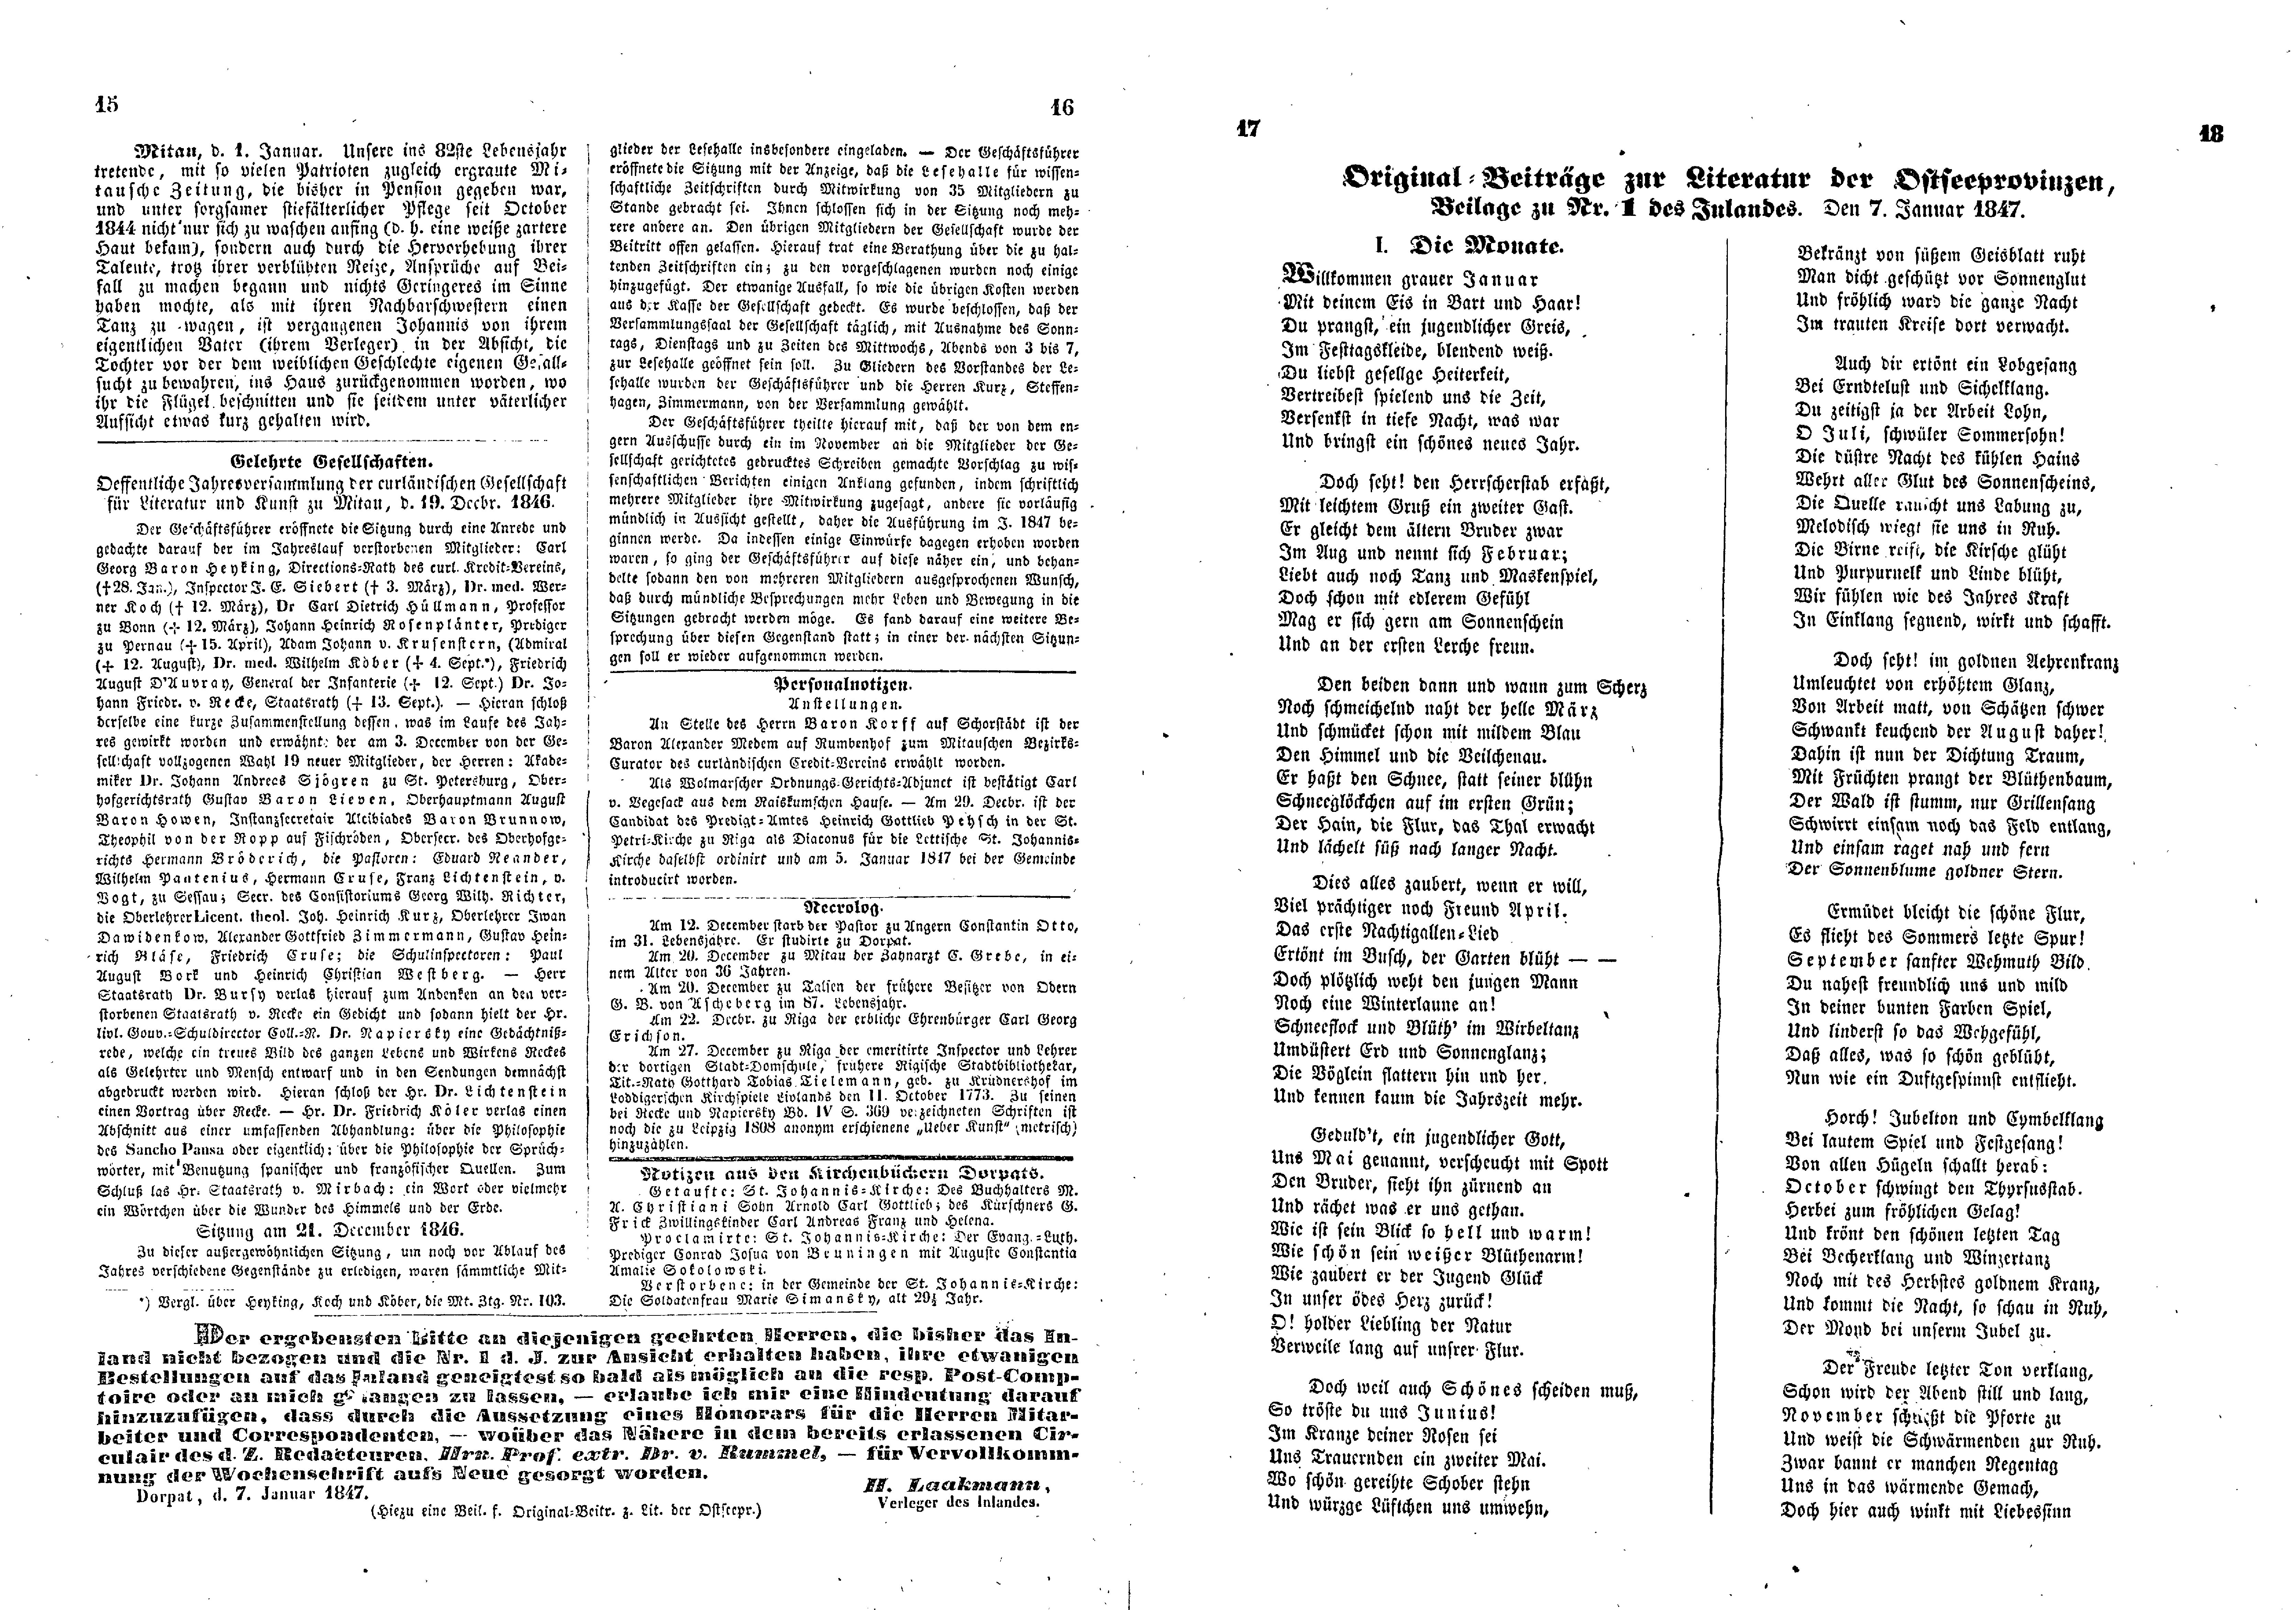 Das Inland [12] (1847) | 9. (15-18) Haupttext